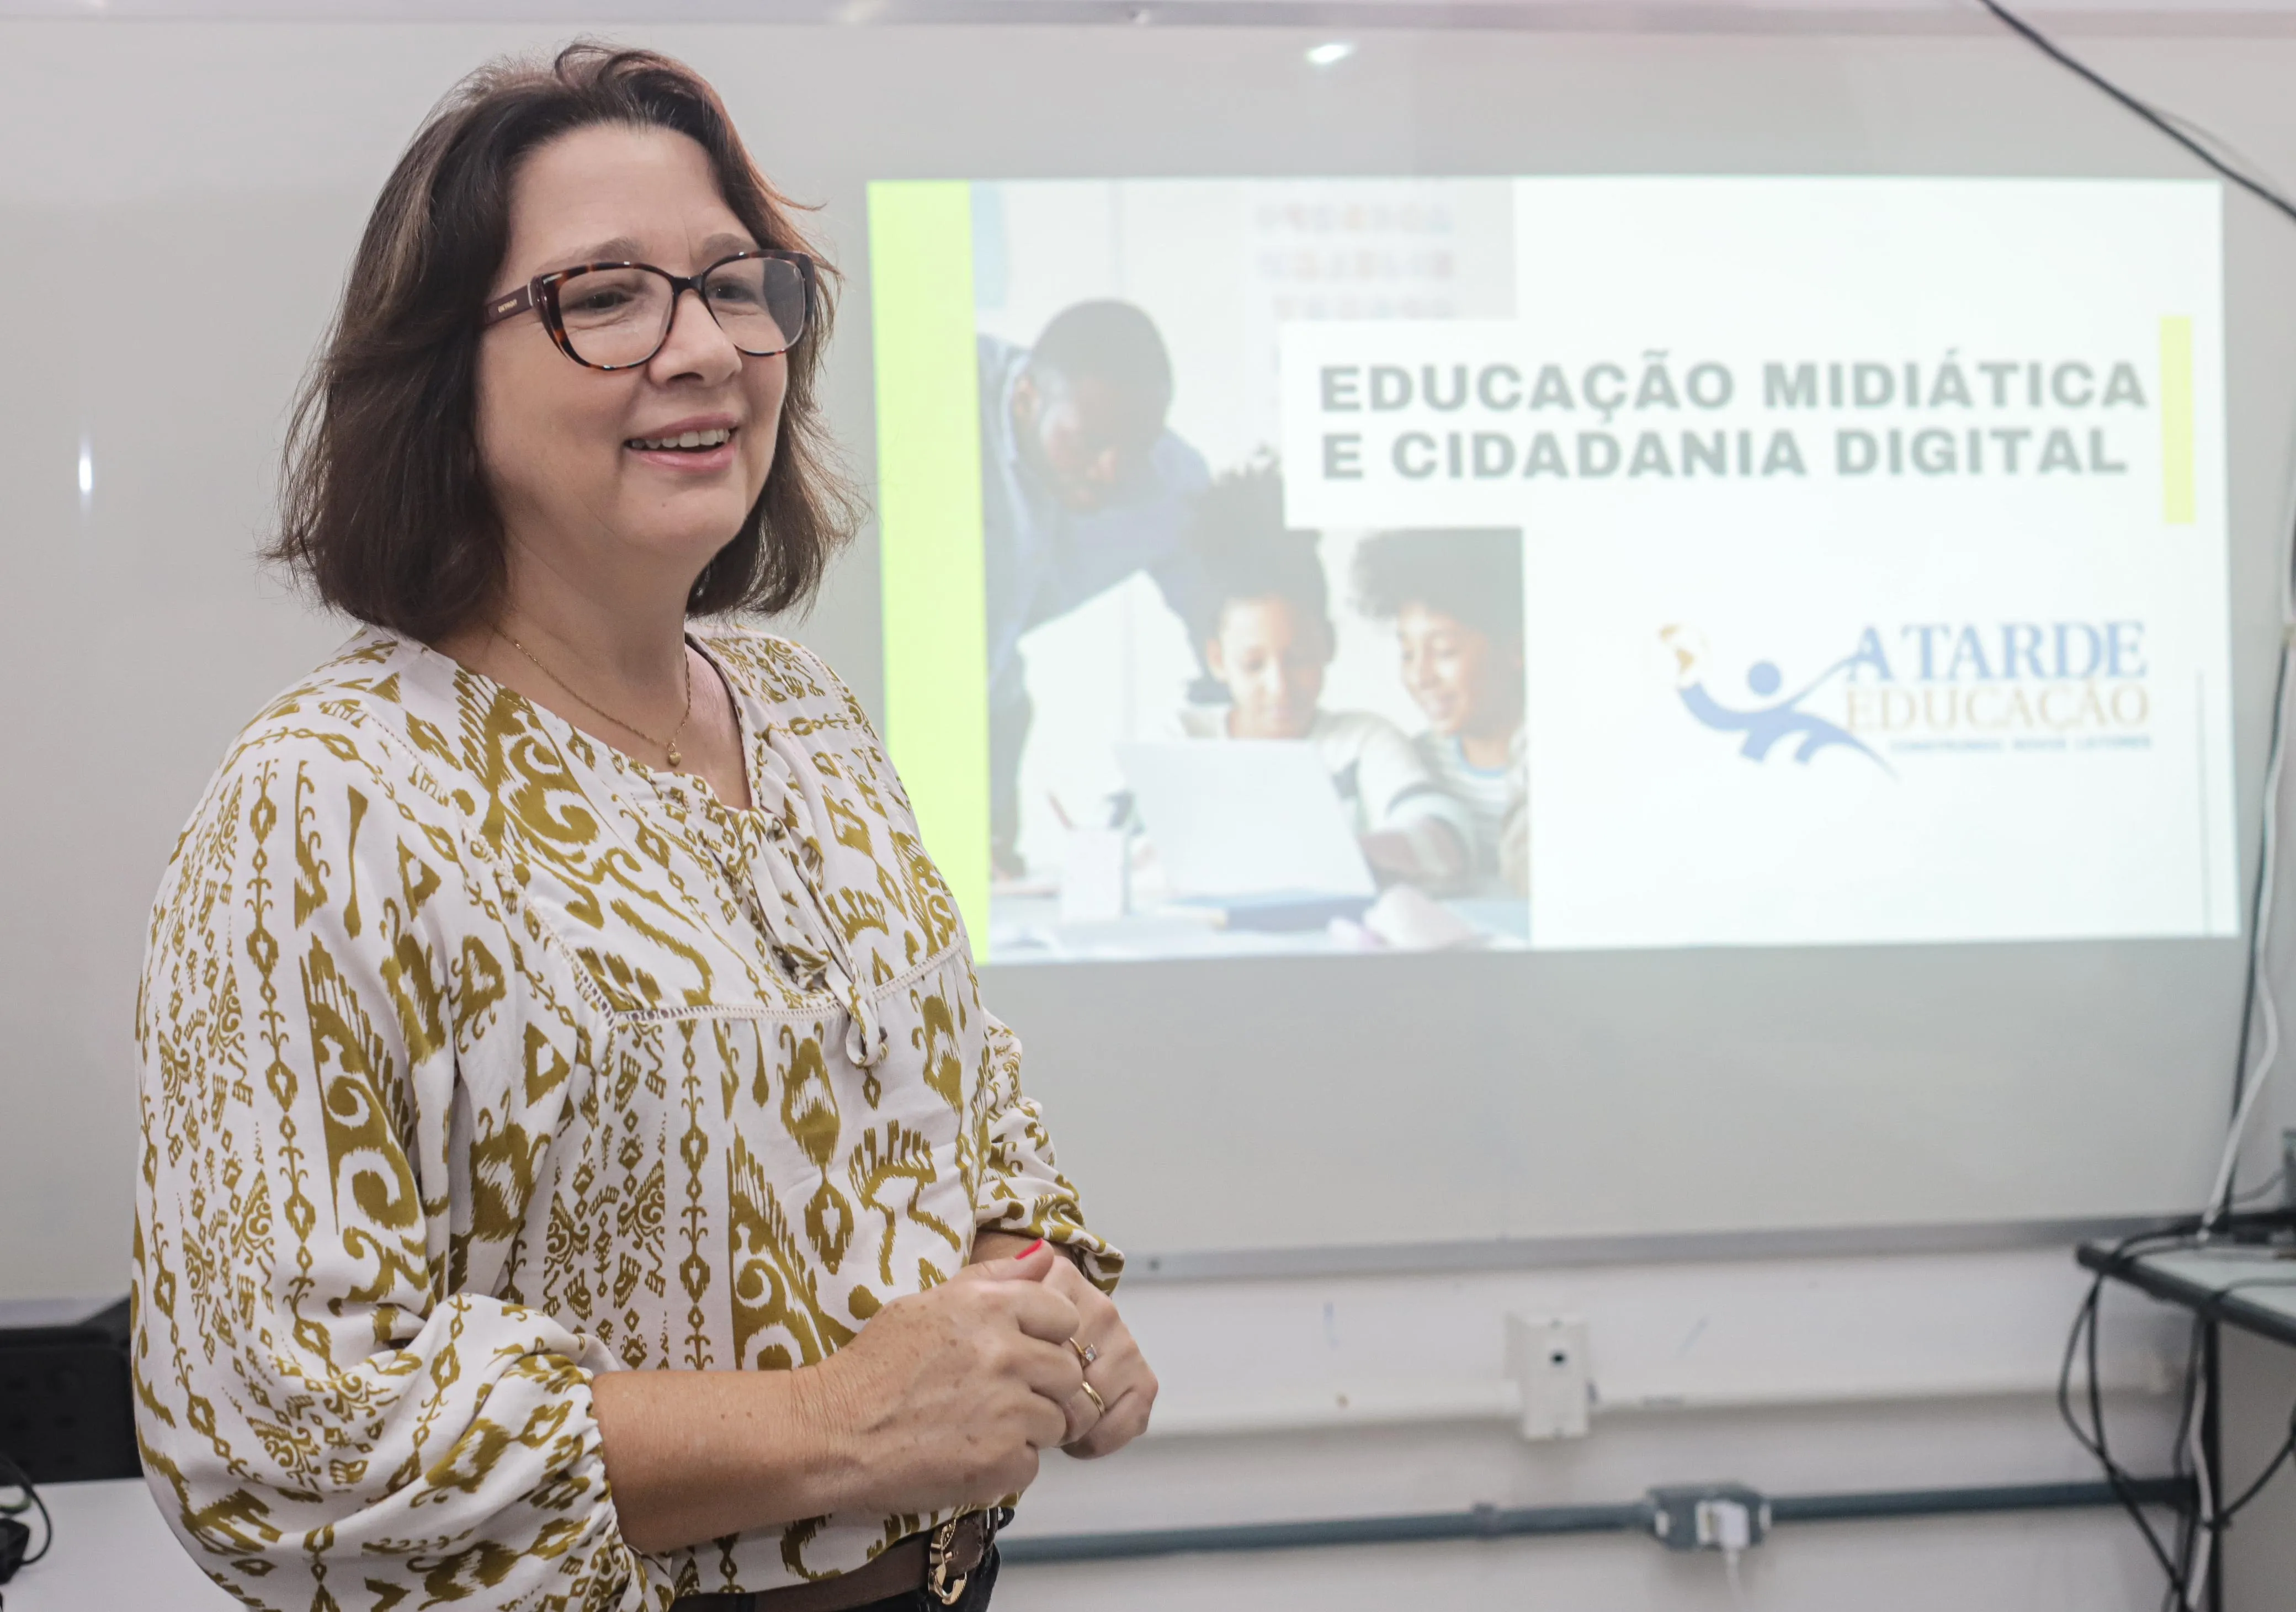 Márcia Firmino, coordenadora pedagógica do A TARDE Educação